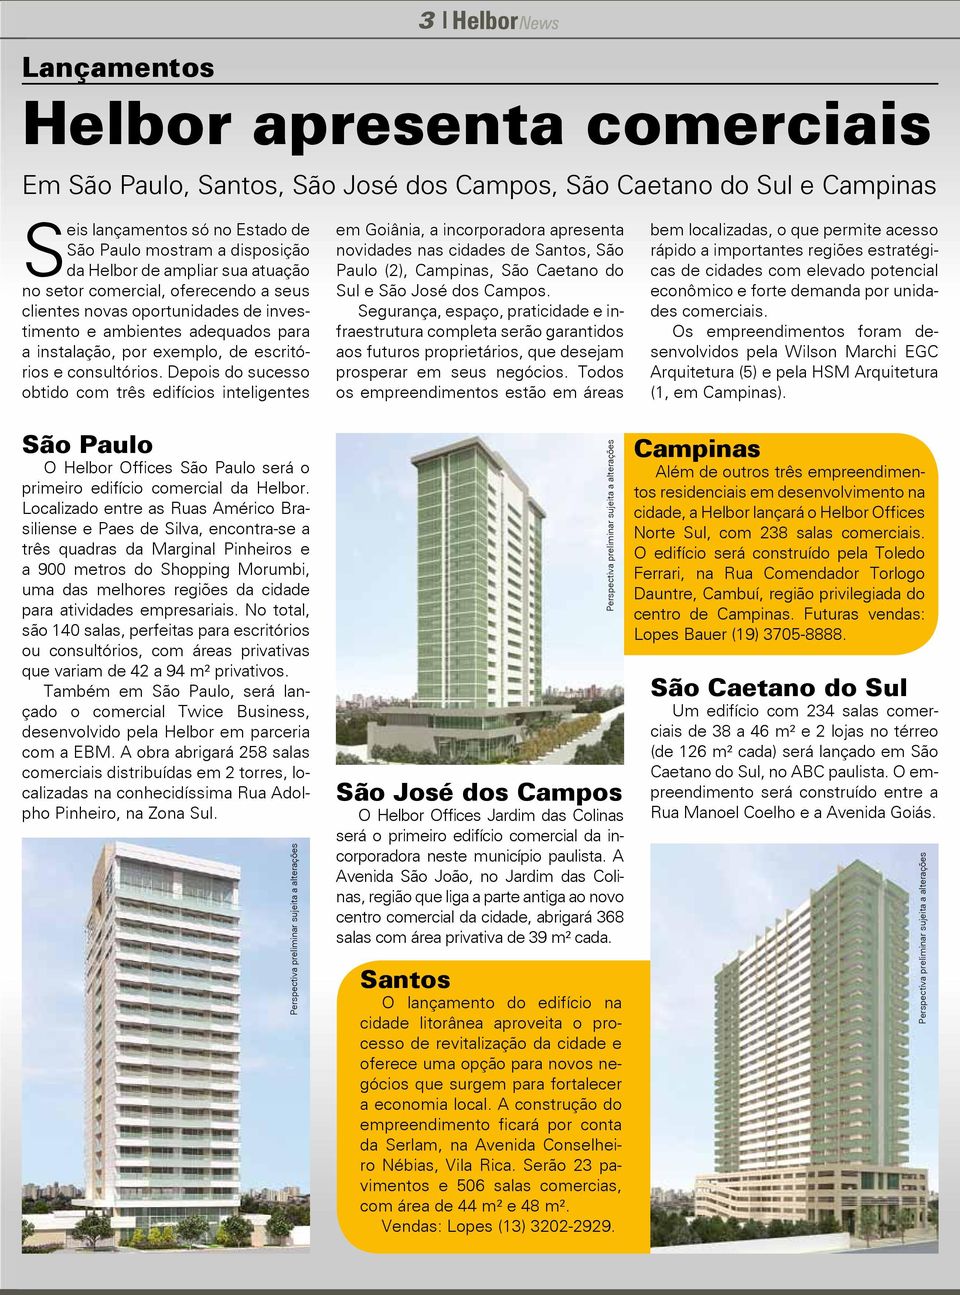 Depois do sucesso obtido com três edifícios inteligentes em Goiânia, a incorporadora apresenta novidades nas cidades de Santos, São Paulo (2), Campinas, São Caetano do Sul e São José dos Campos.